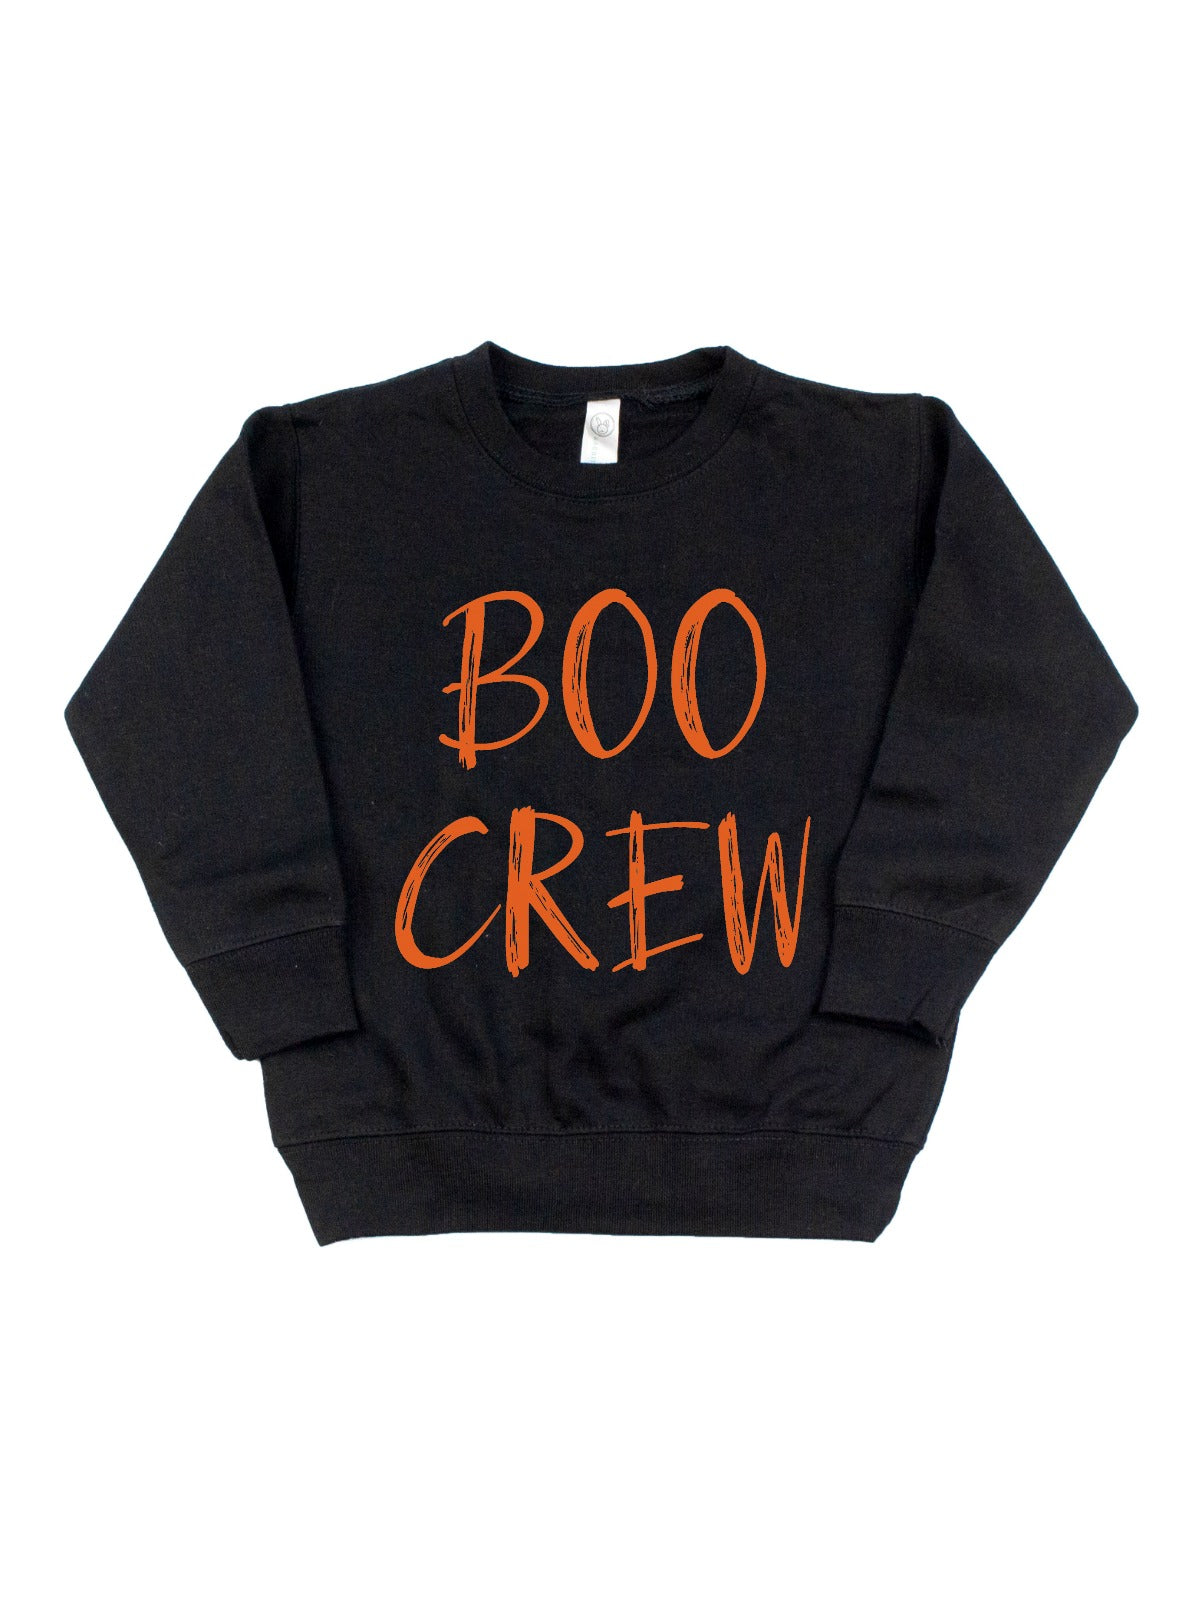 boo crew kids pullover sweatshirt